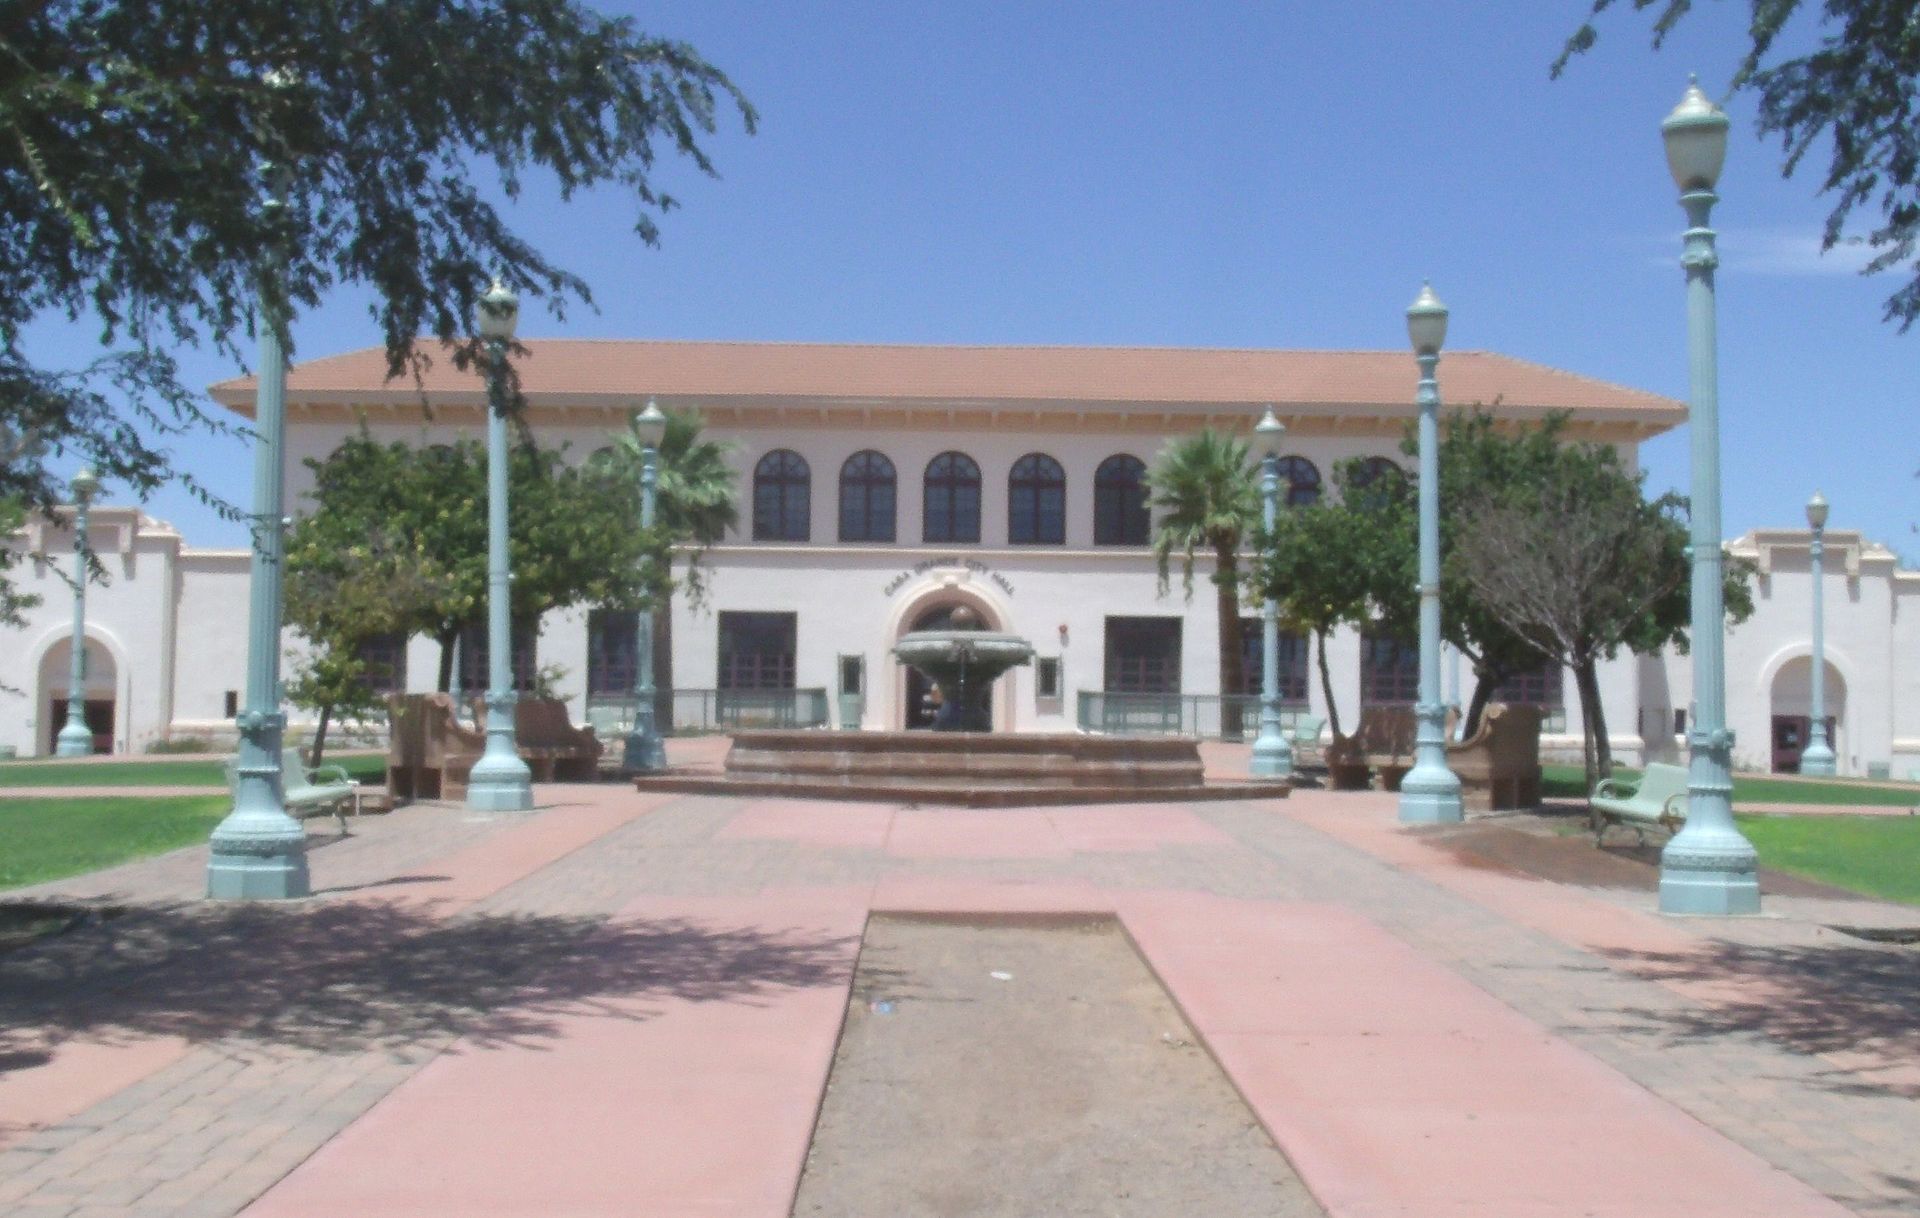 Casa Grande Highschool | wikimedia.org